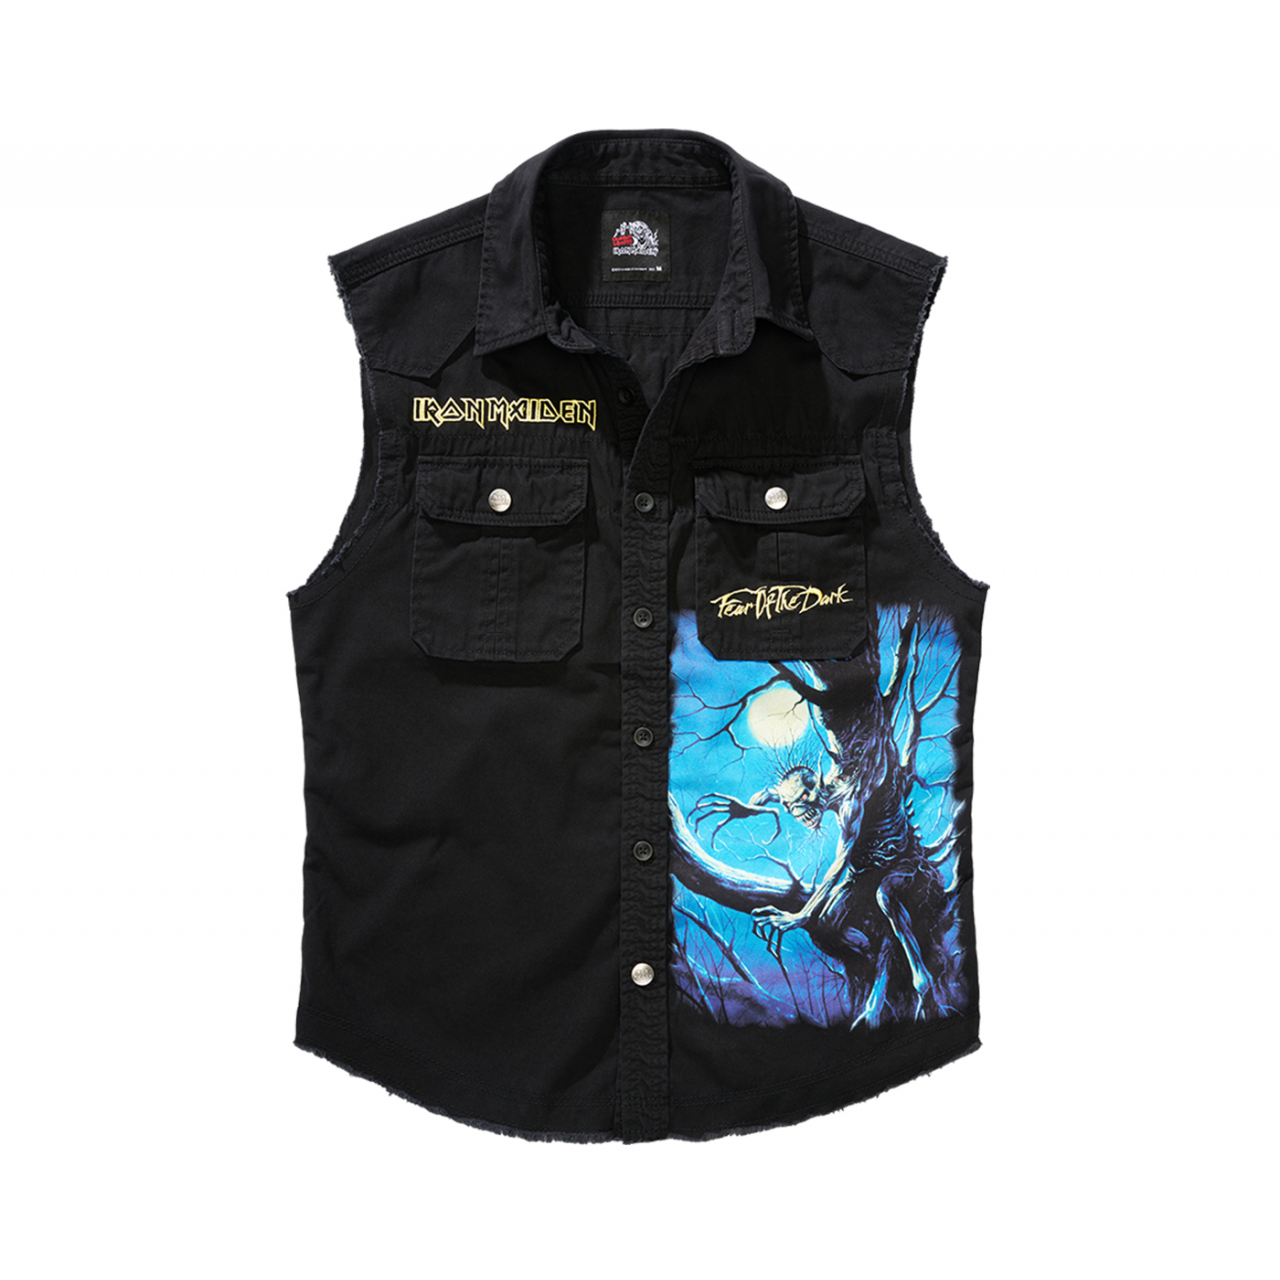 Košile Brandit Iron Maiden Vintage Shirt Sleeveless FOTD - černá, XL